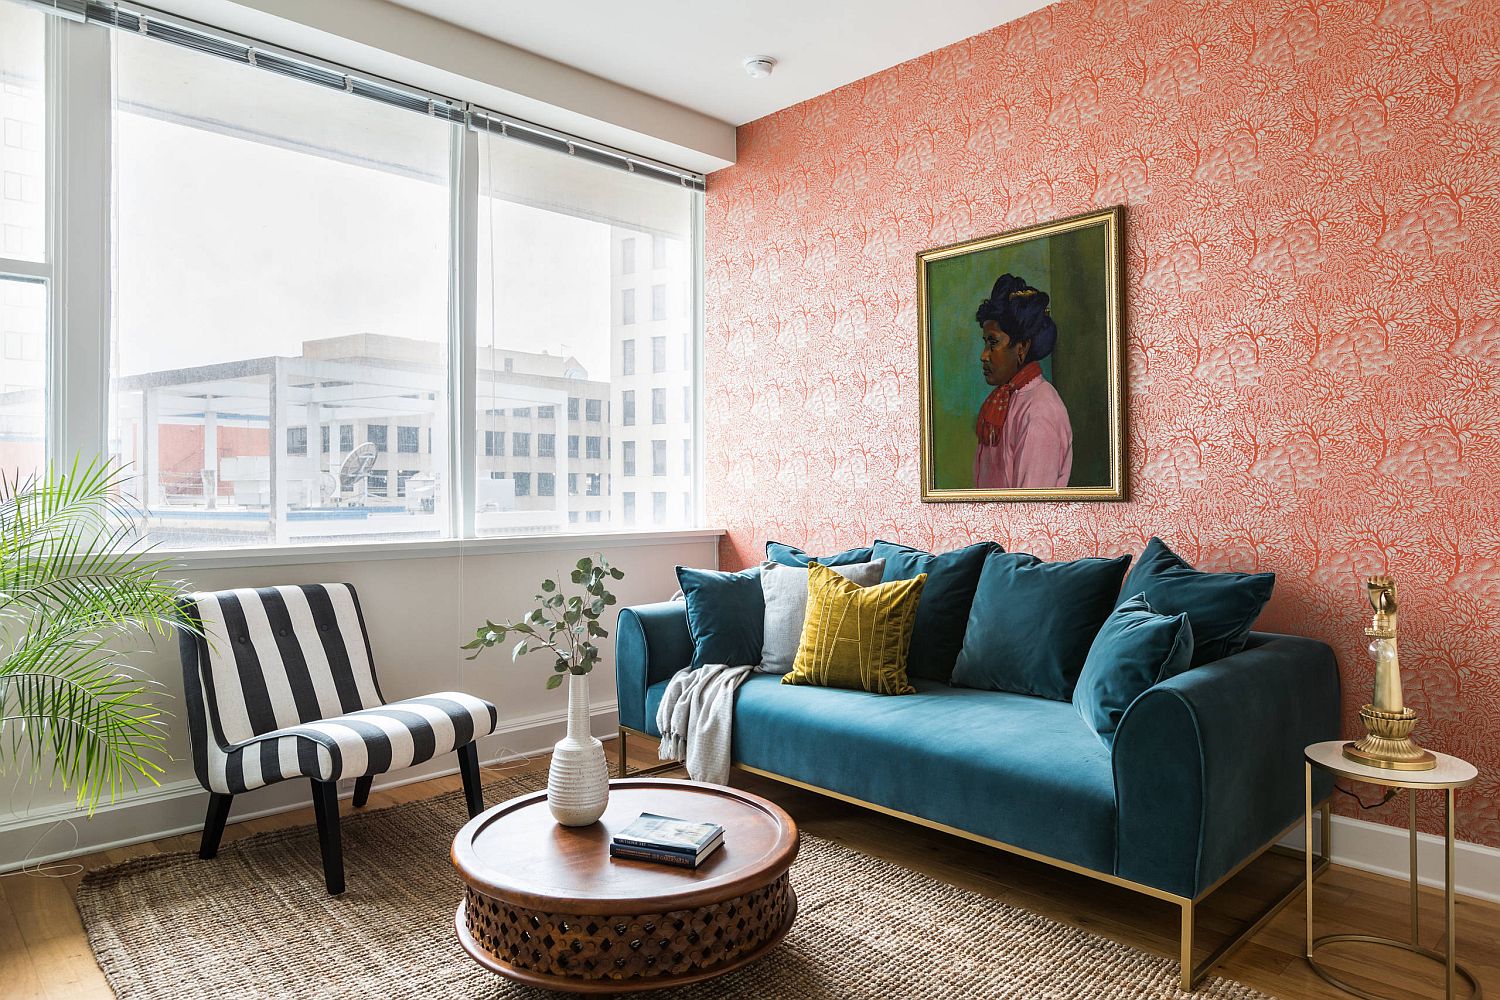 Giữa không gian chọn phong cách chiết trung phóng khoáng với nhiều mảng màu nổi bật như xanh lam, đỏ, hồng, cam, xanh lá, xanh ô liu,... thì chiếc sofa kẻ sọc đen trắng trở thành một điểm nhấn thu hút khách đến thăm nhà hơn cả.